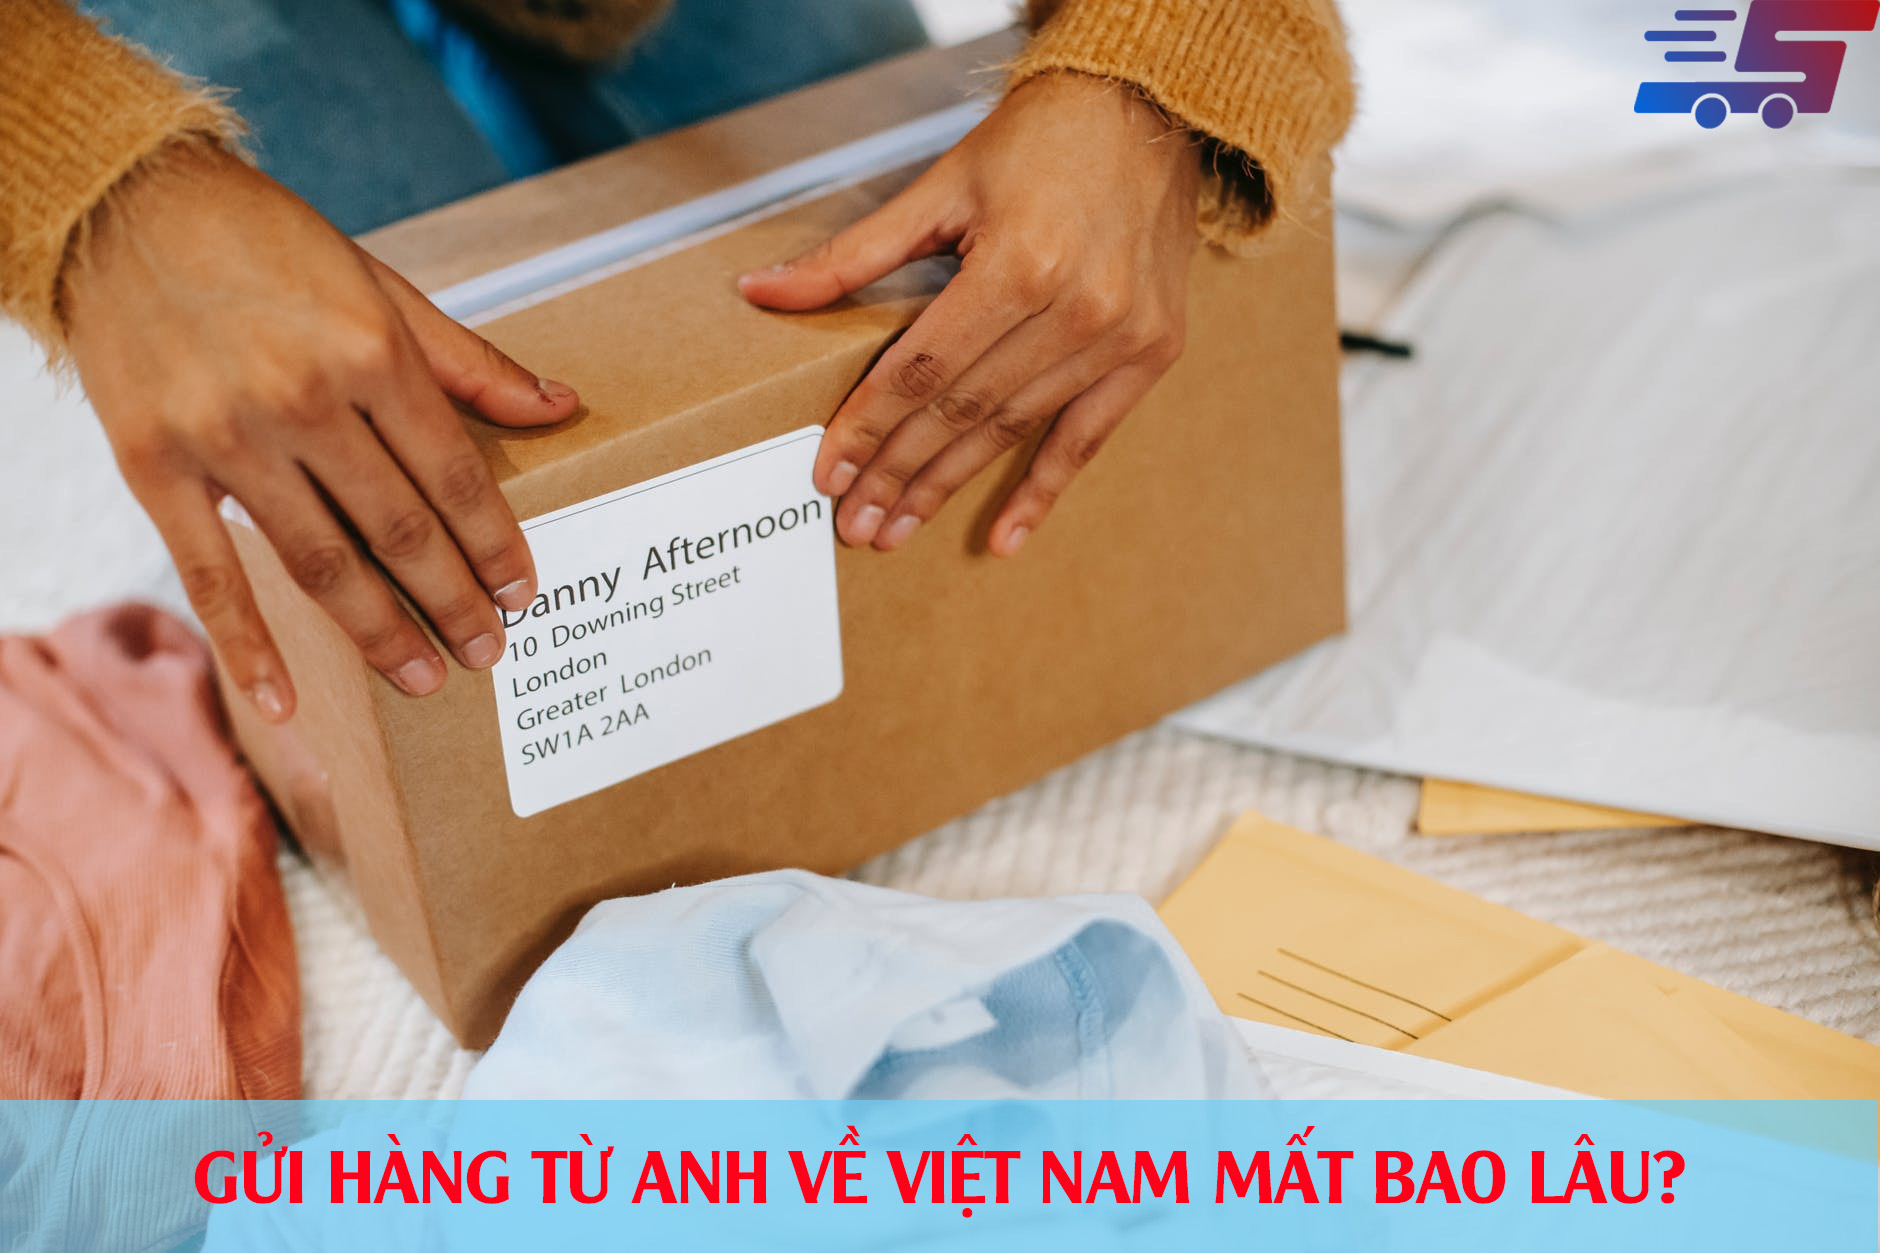 Gửi hàng từ Anh về Việt Nam mất bao lâu?